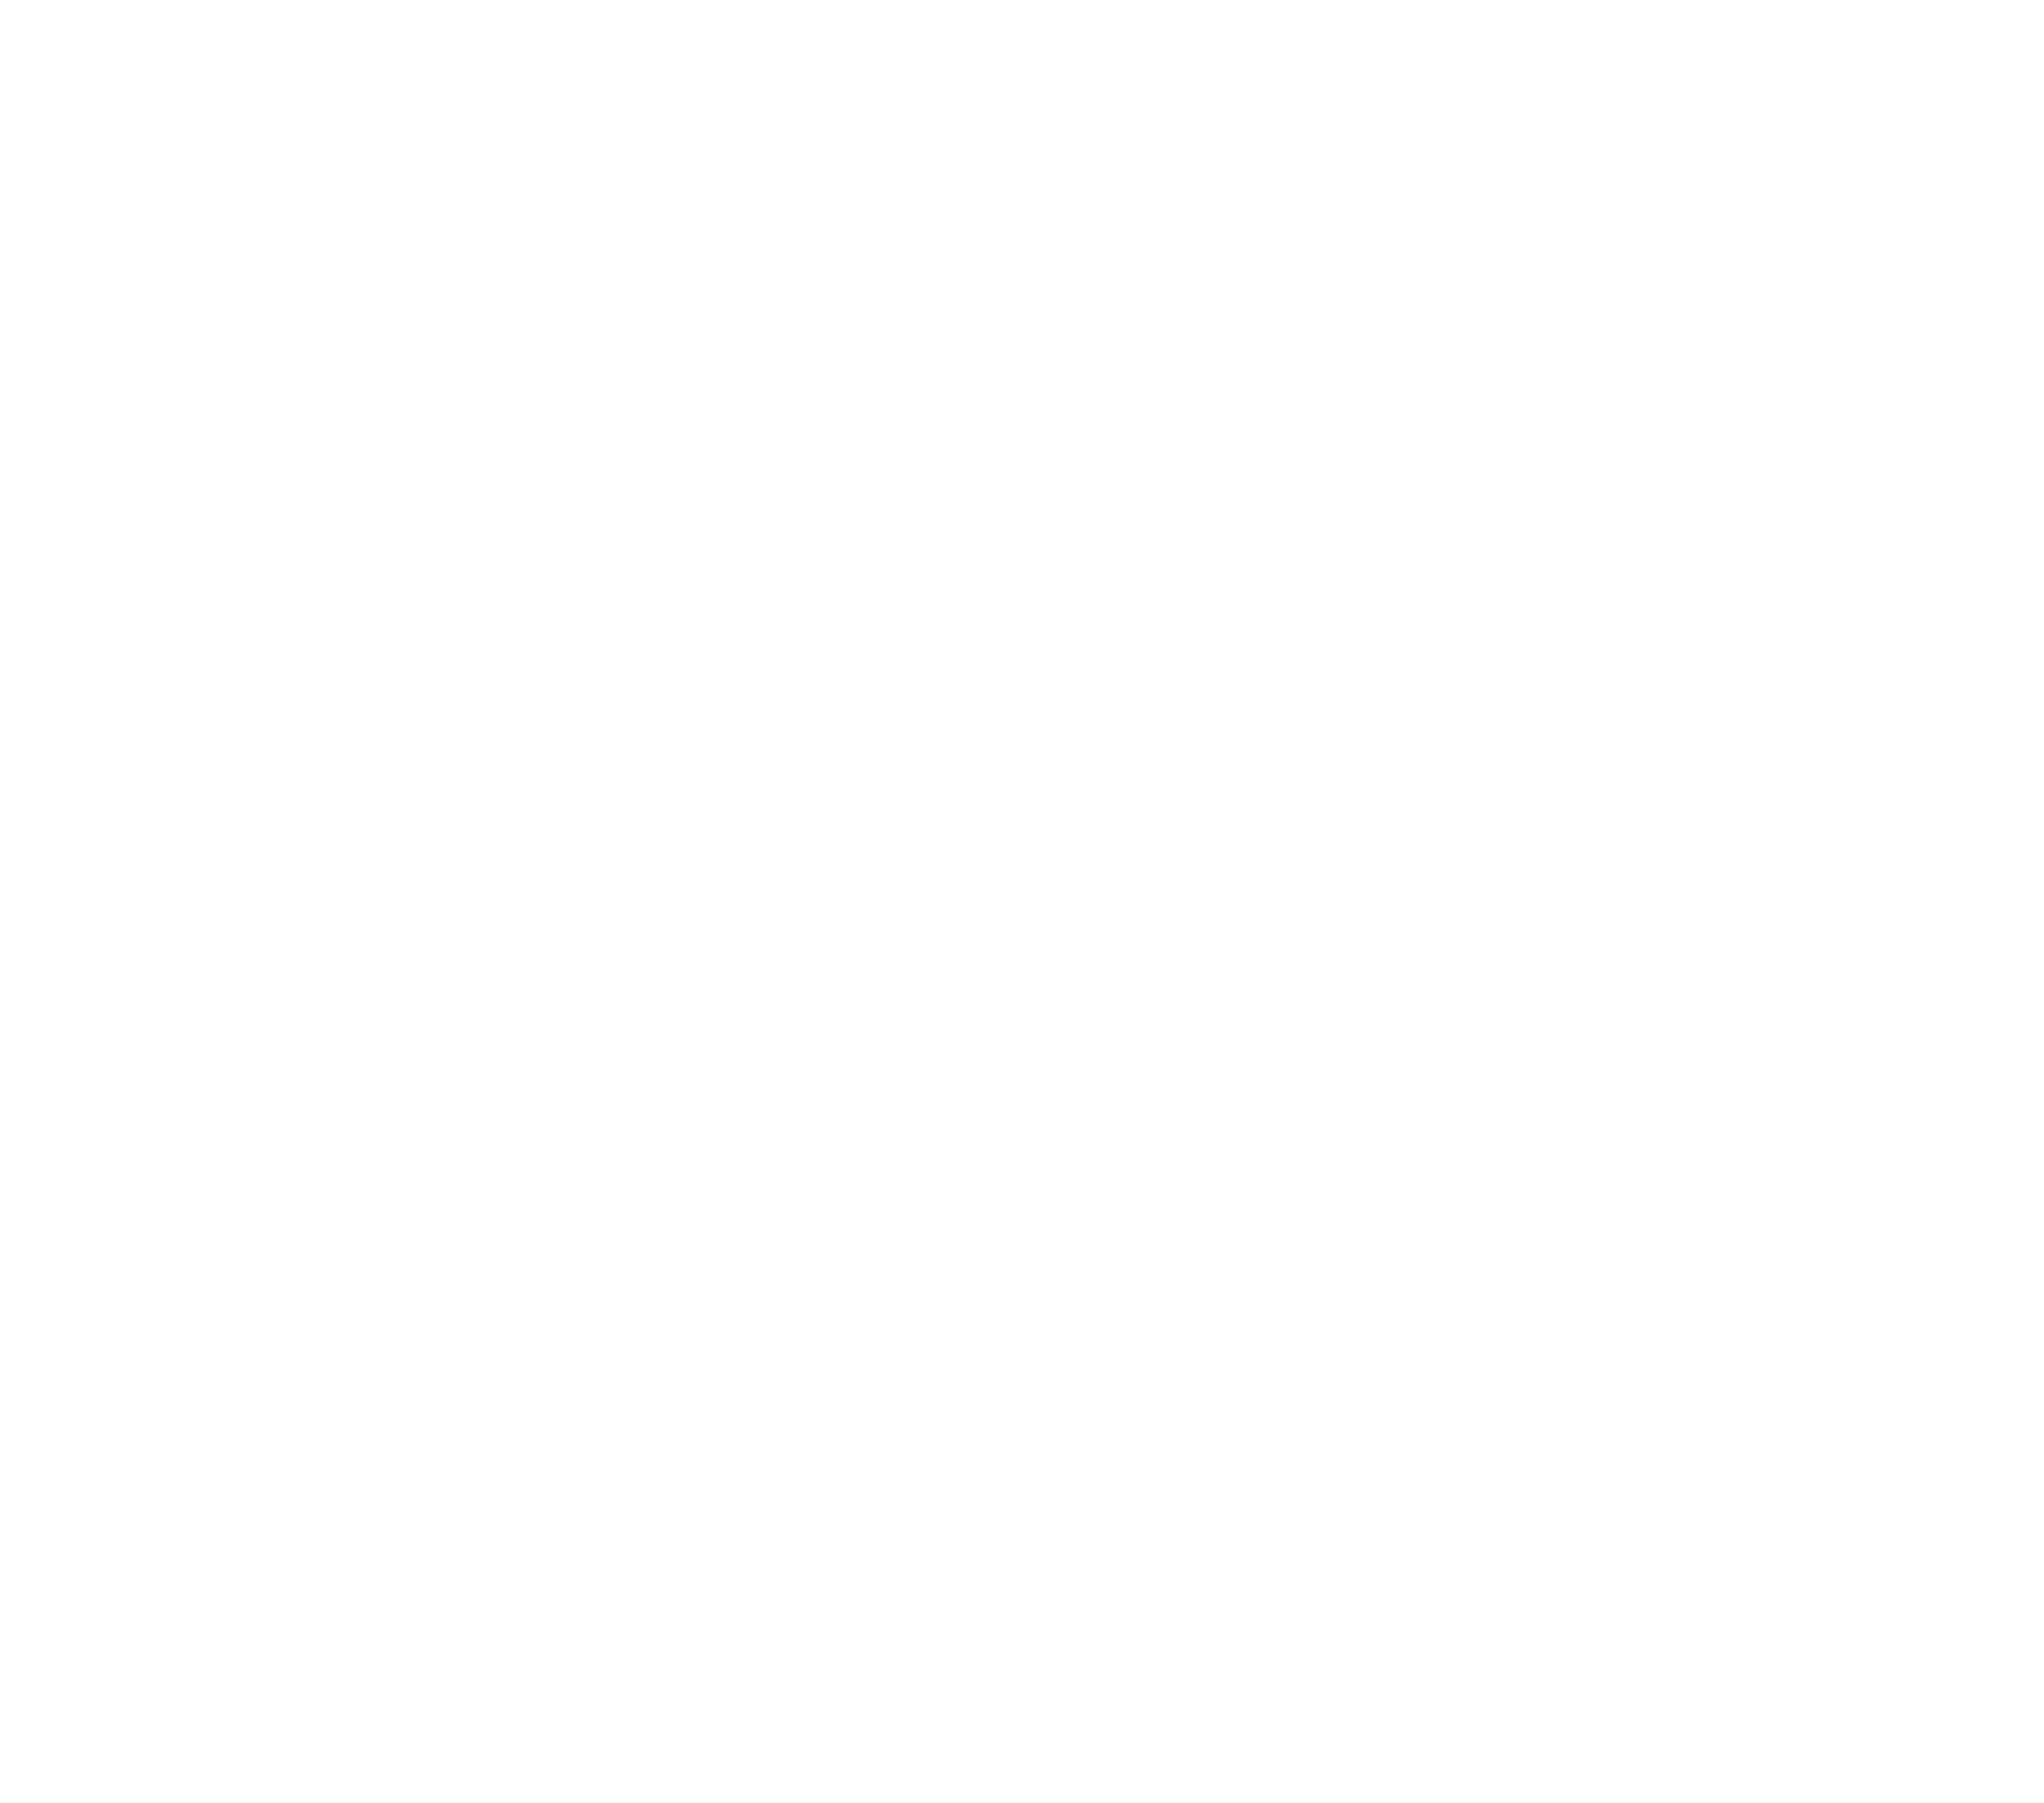 Same Day Texas Apostille Service